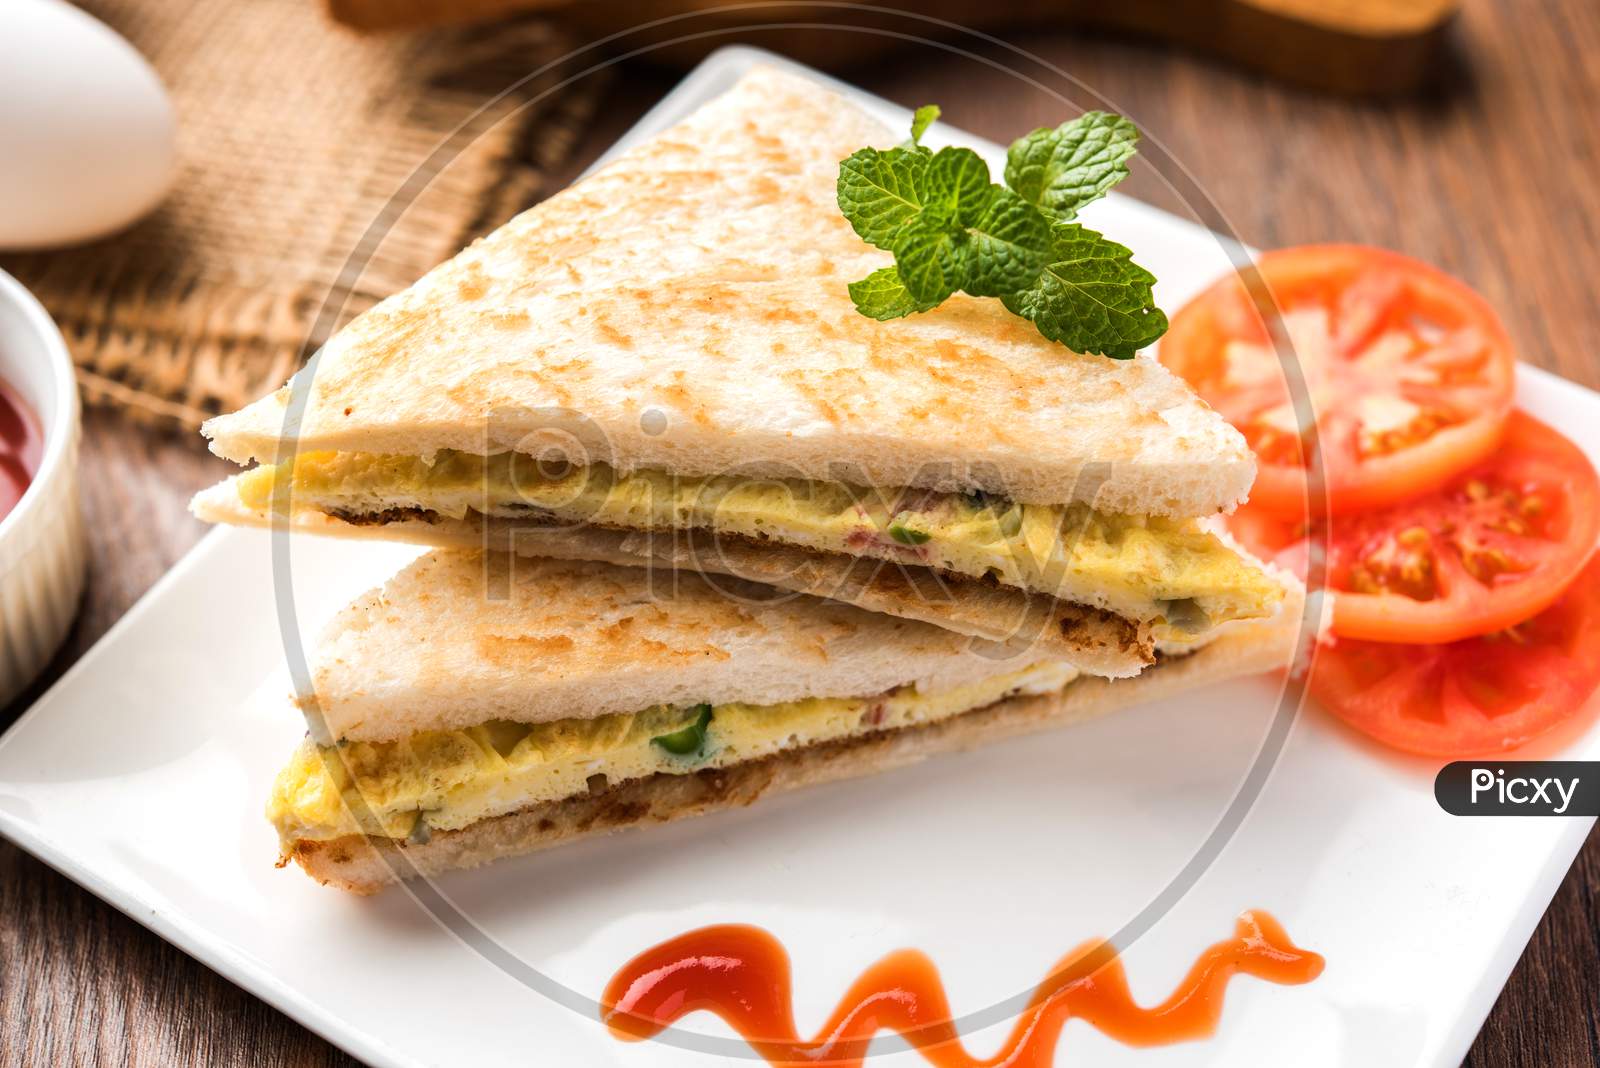 Indian Bread Omelette/Omelet sandwich